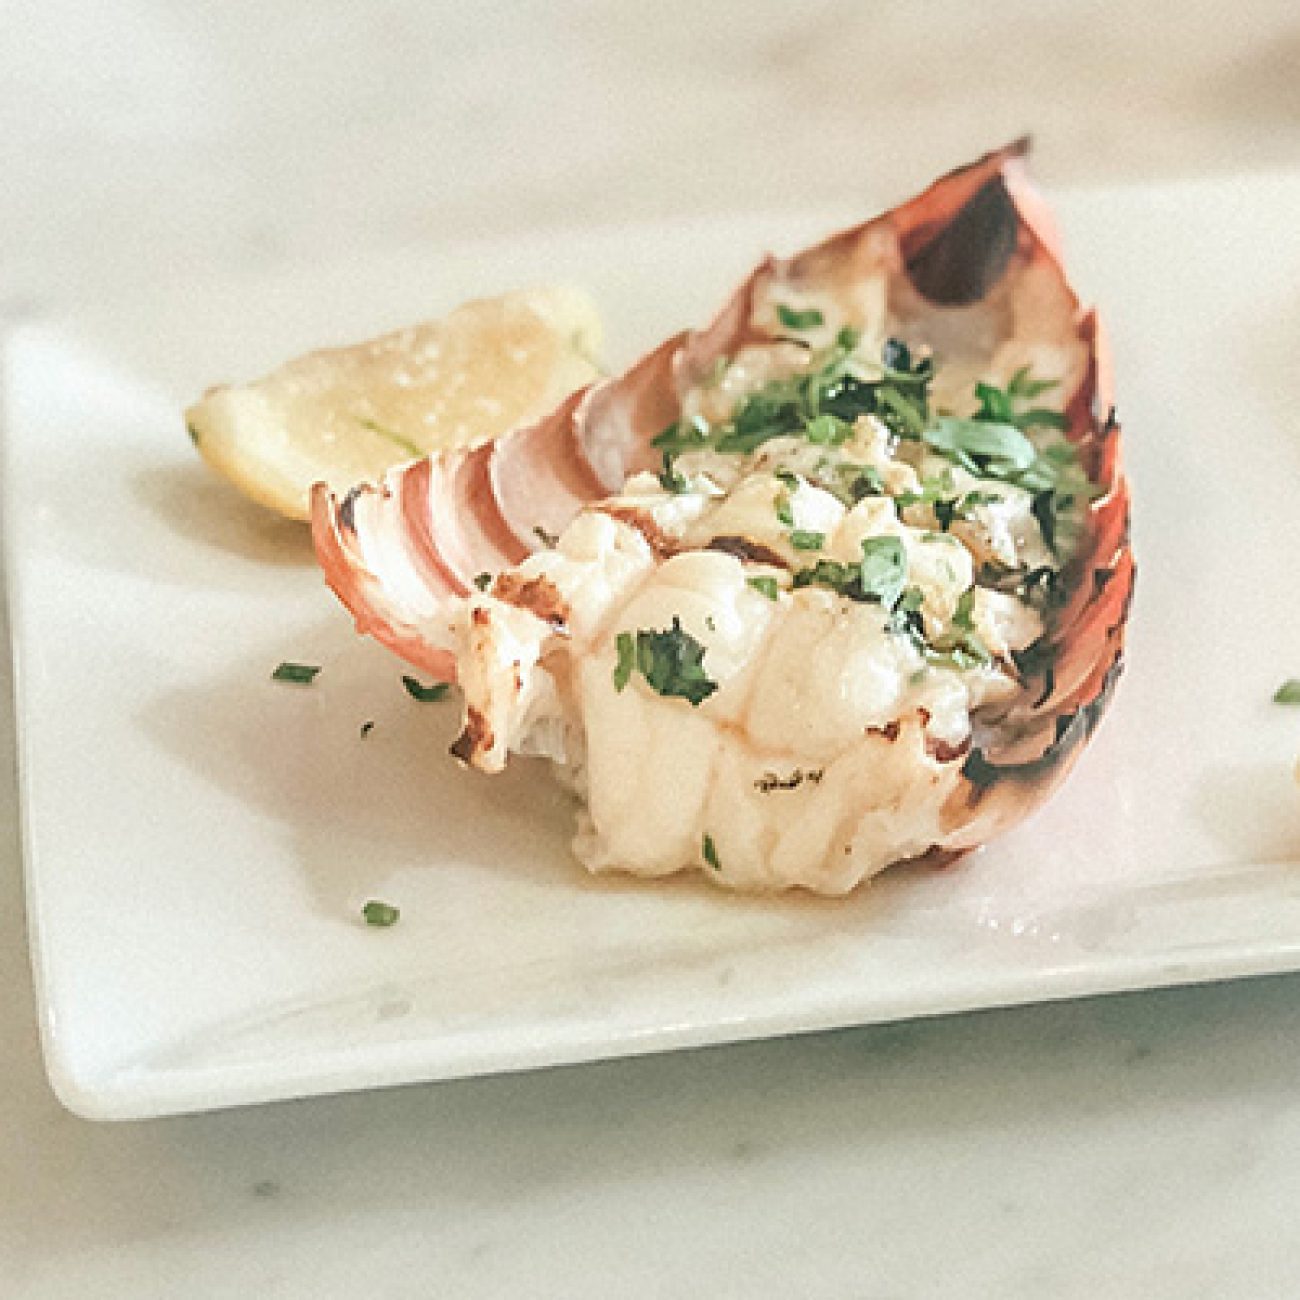 Luscious Lobster Dip Inspired by Vineyard Flavors